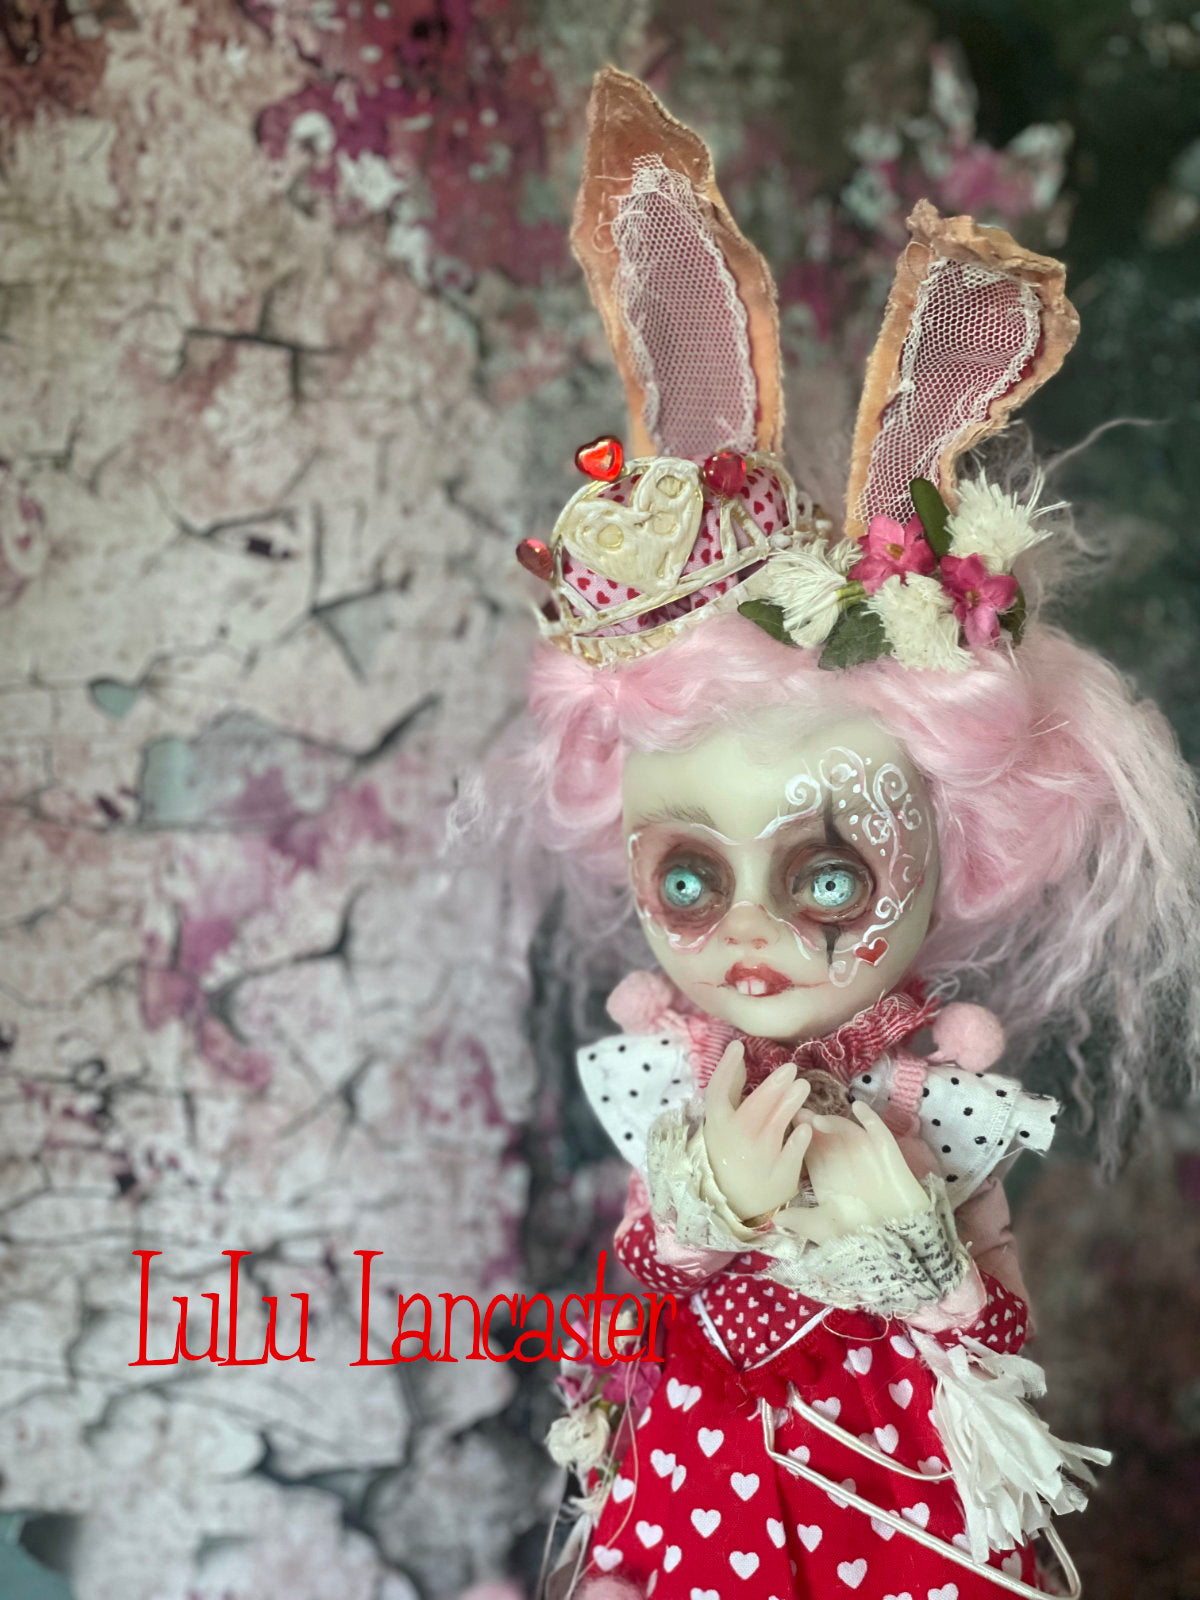 Hanah Heart the Bunny Queen Original LuLu Lancaster Art Doll